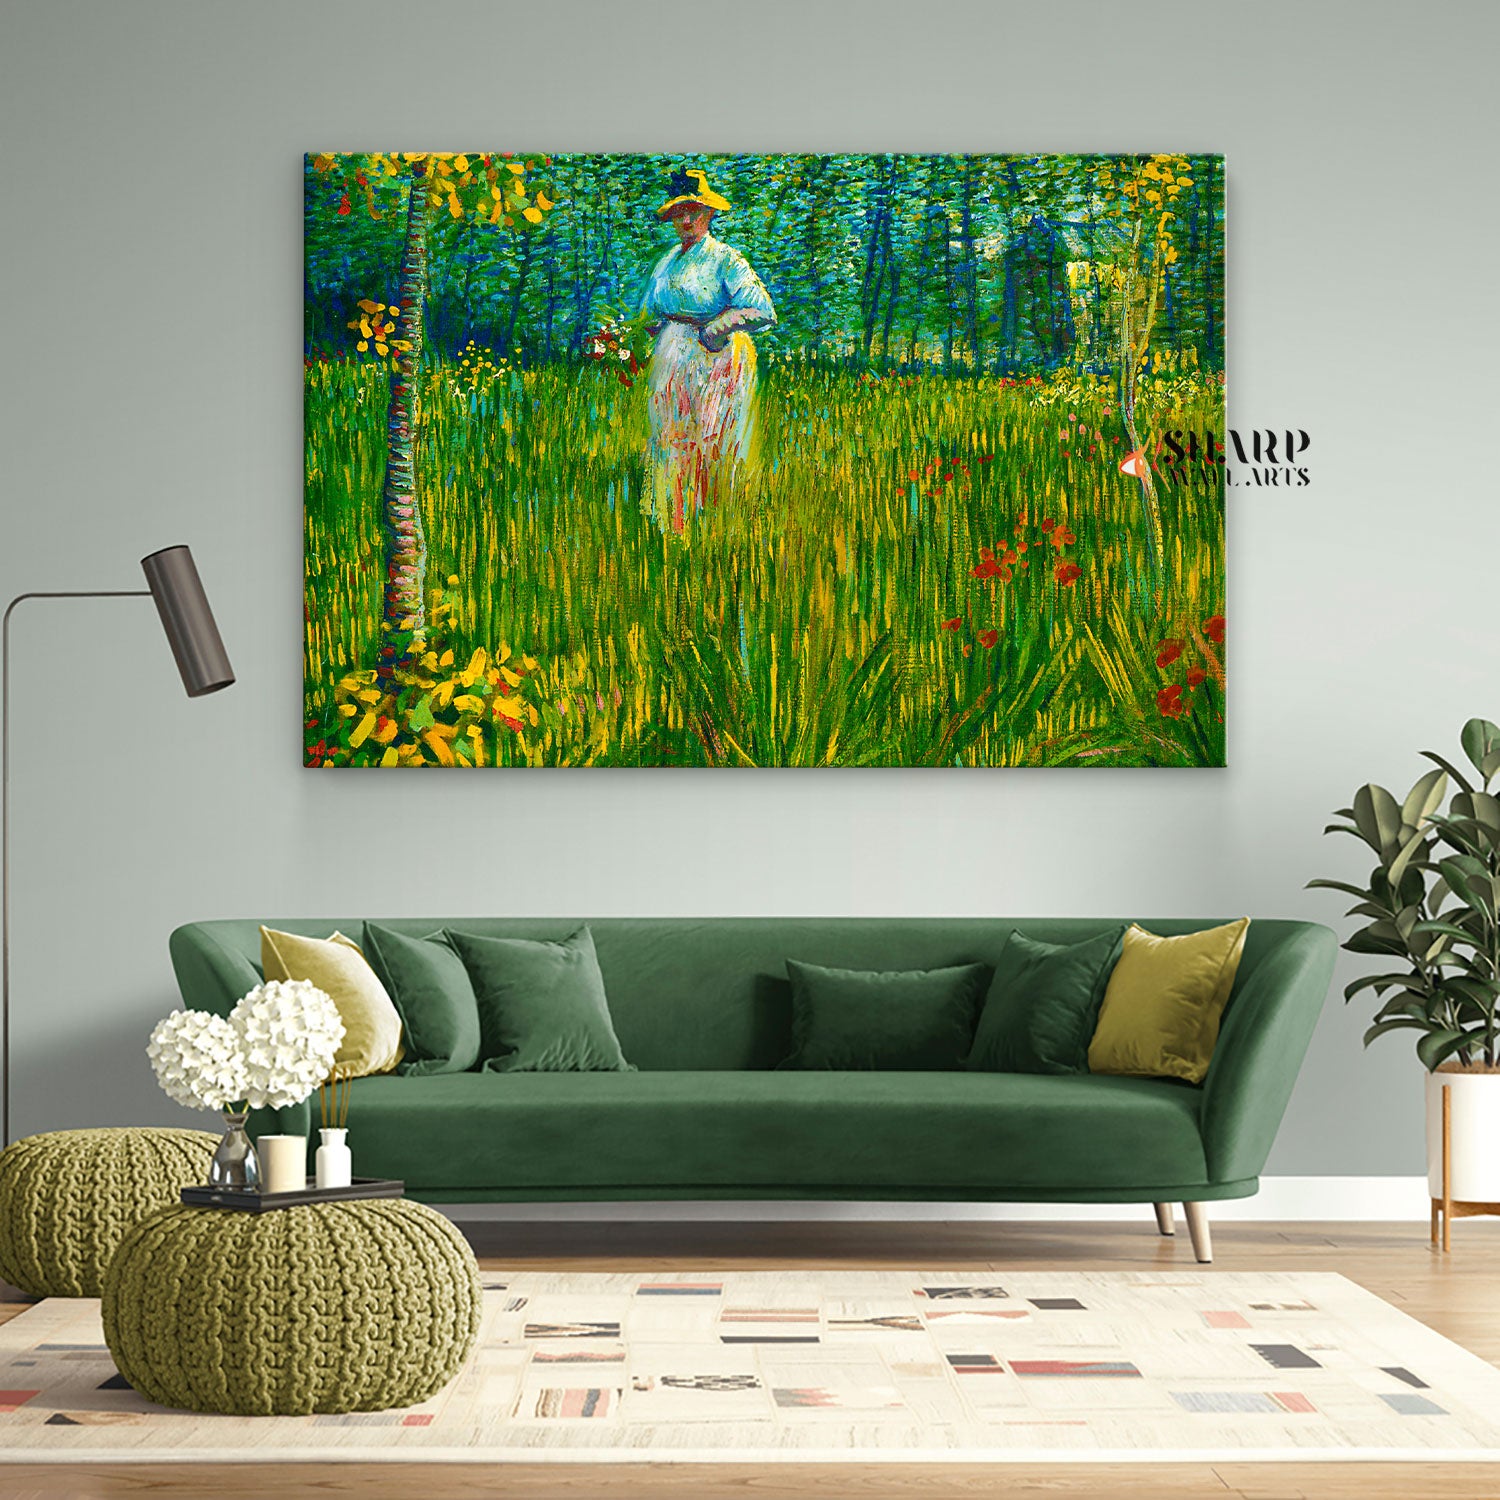 Vincent van Gogh A Woman Walking in a Garden Canvas Wall Art